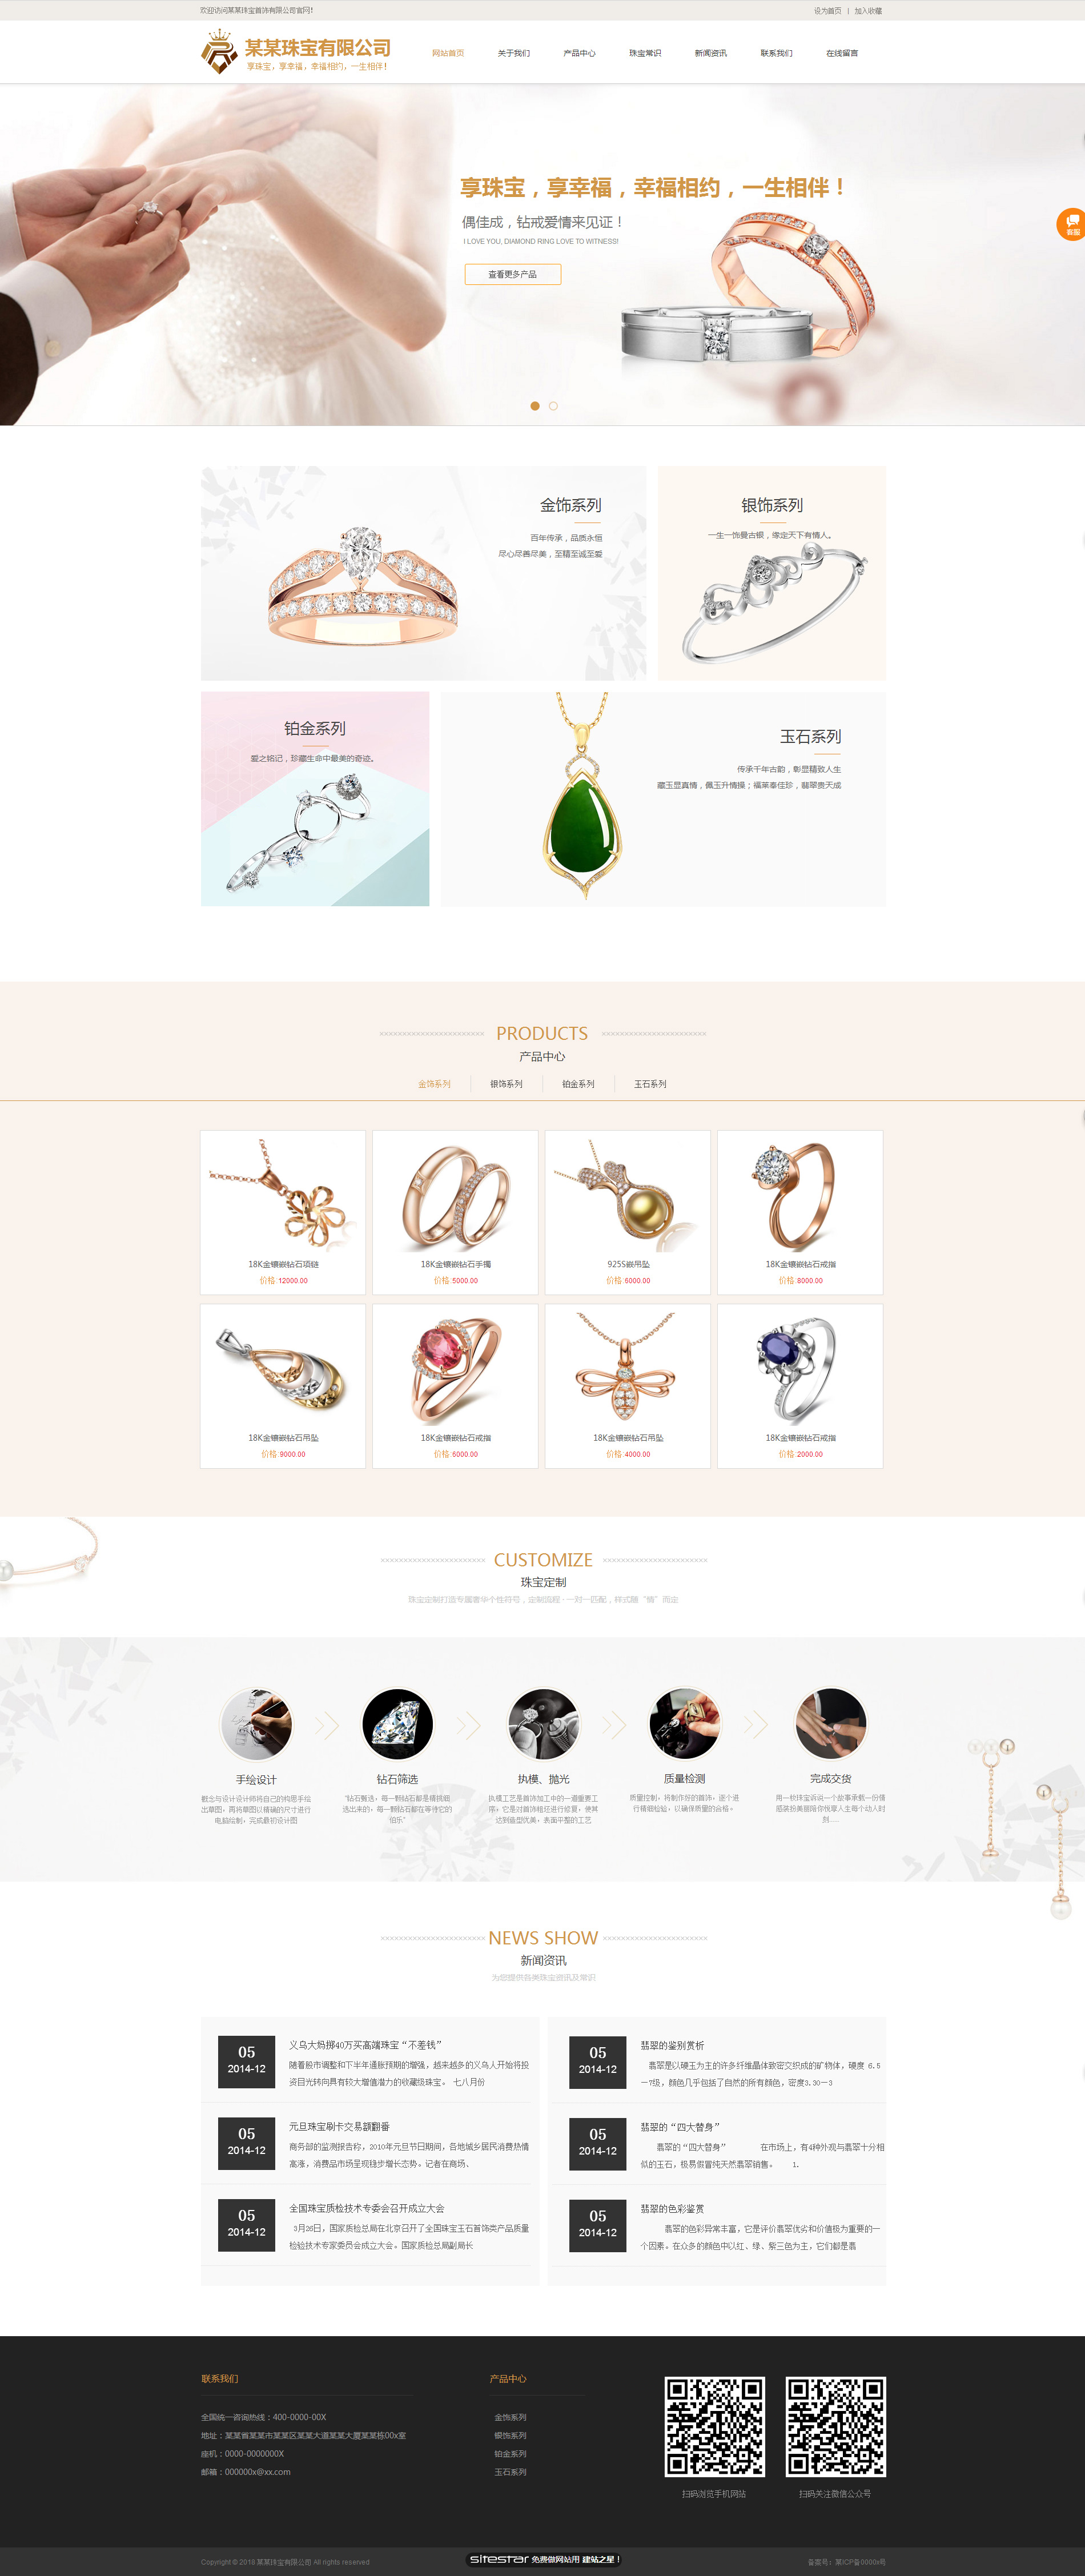 企业网站精美模板-jewelry-1079228